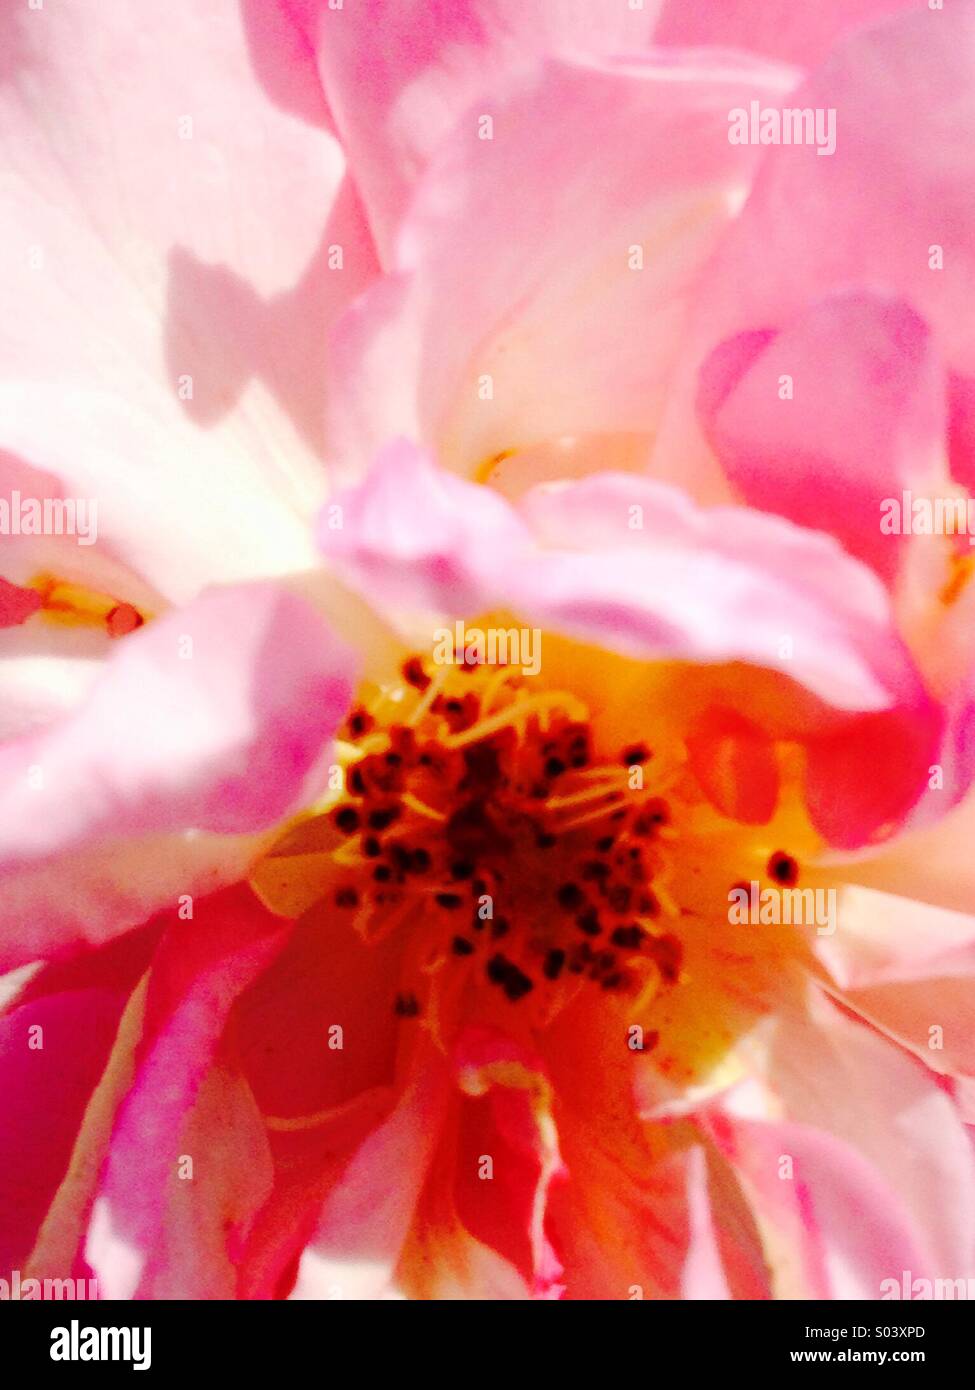 Rose fiore rosa al sole con fili di seta come petali roseo e misterioso giallo e nero stami. Foto Stock